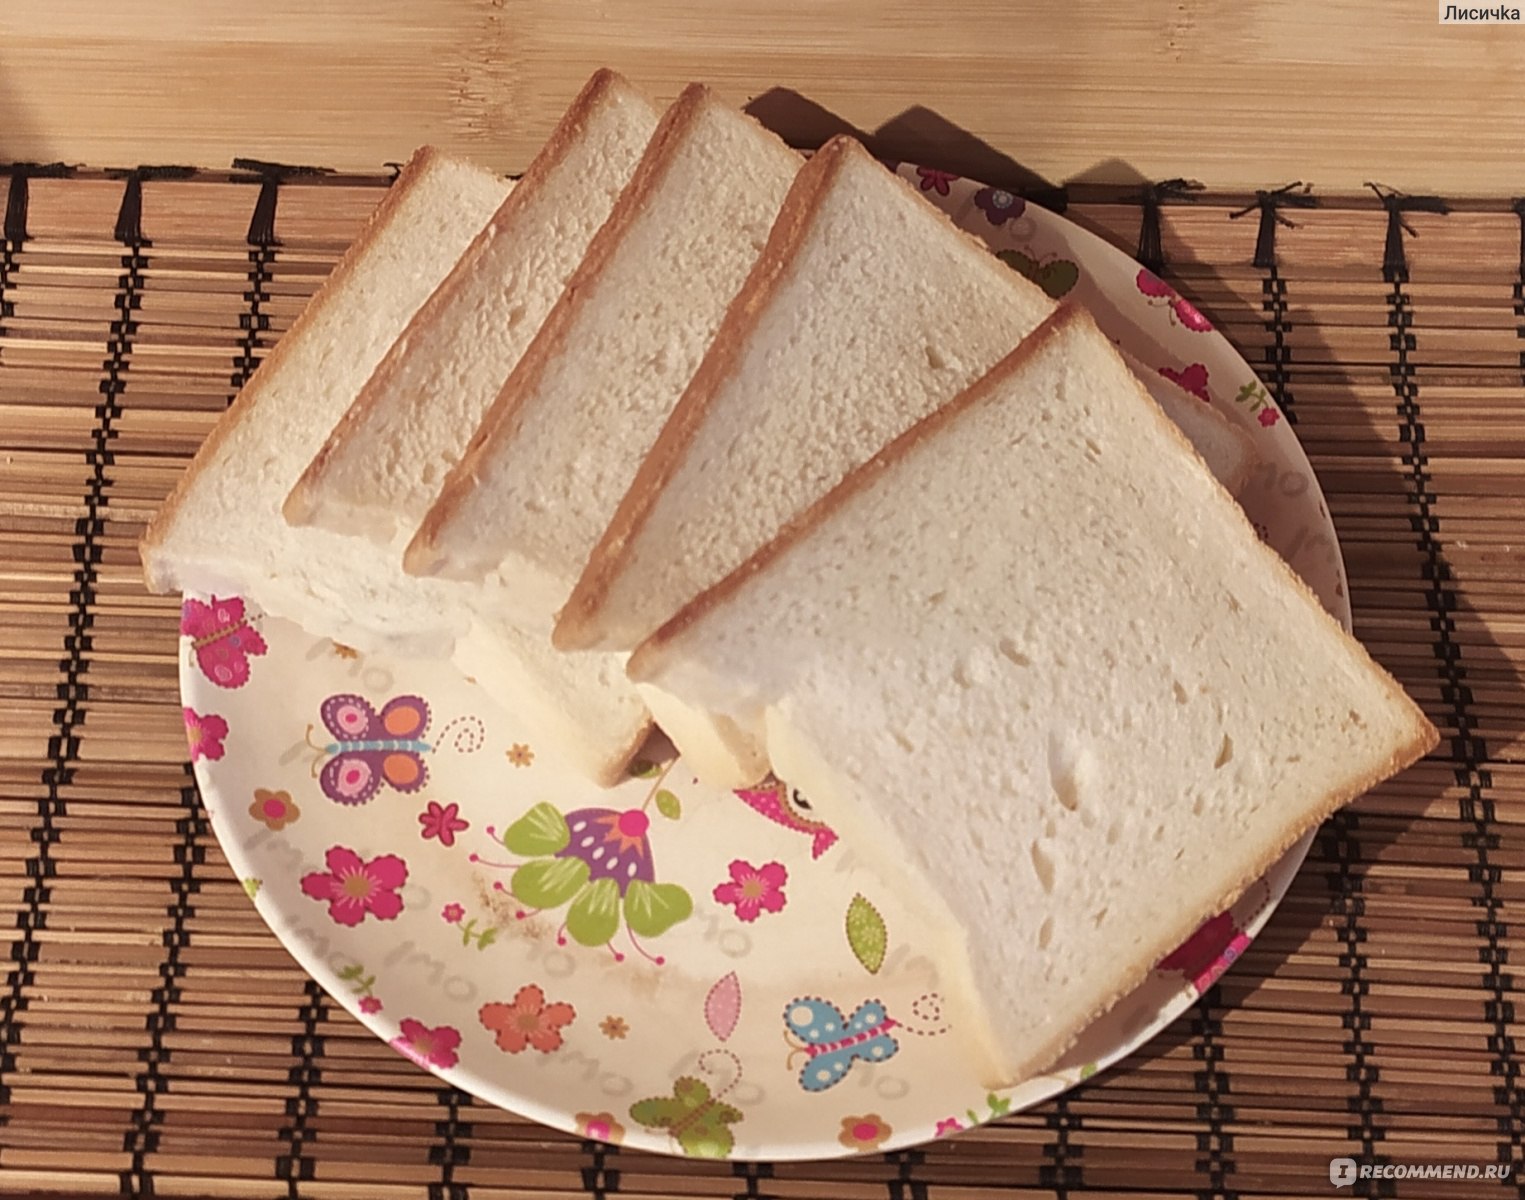 Хлеб тостовый калорийность. Хлеб тостовый пшеничный Коломенское. Хлеб тостовый БКК. Торт из тостового хлеба сладкий. Калорий в тосте из белого хлеба.